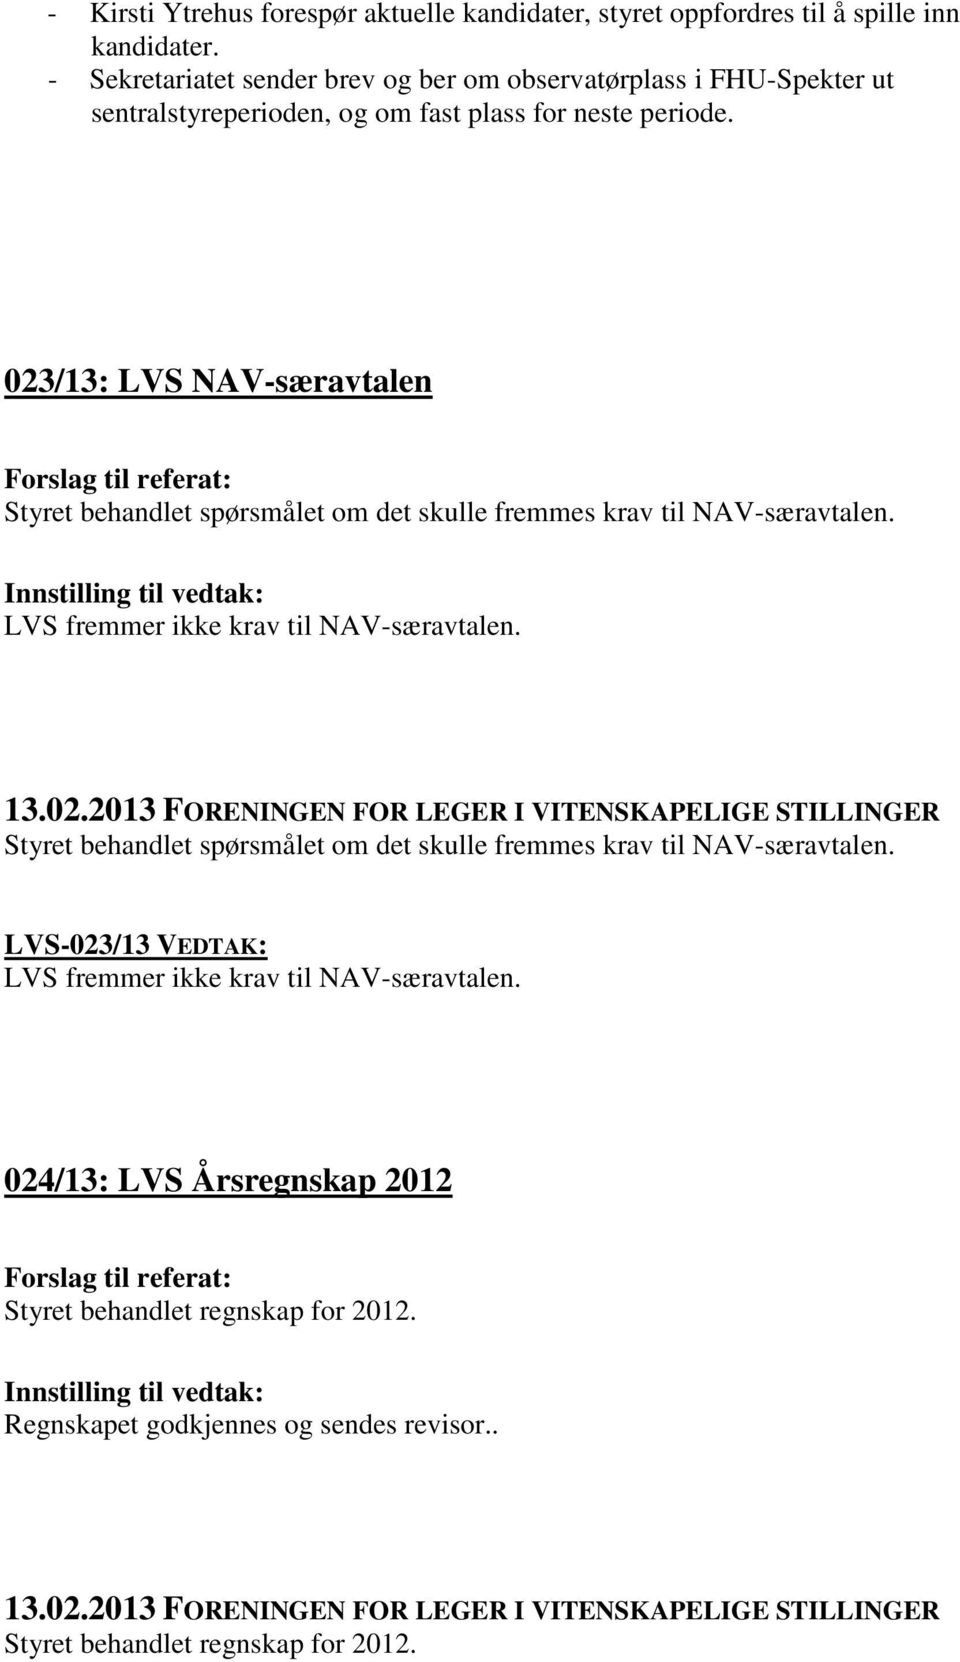 023/13: LVS NAV-særavtalen Styret behandlet spørsmålet om det skulle fremmes krav til NAV-særavtalen. LVS fremmer ikke krav til NAV-særavtalen.